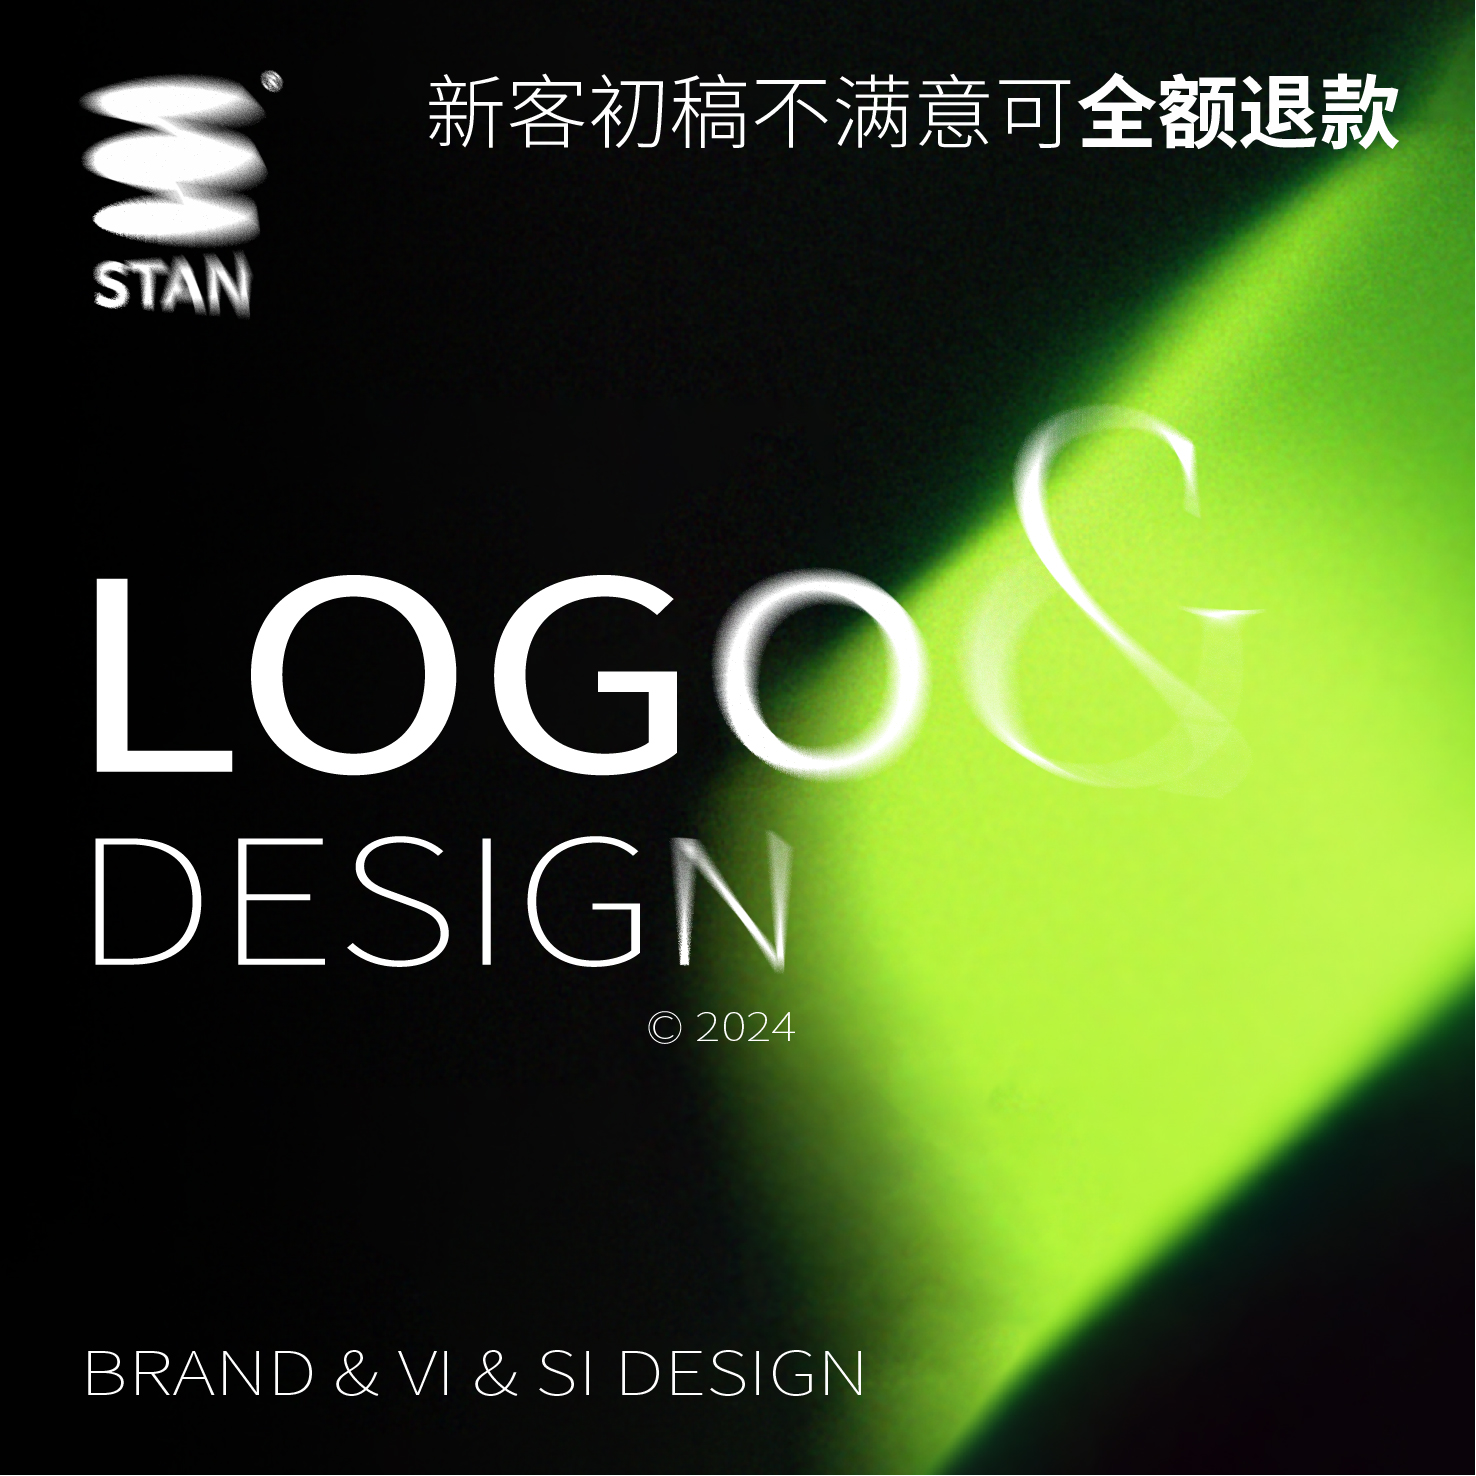 高端logo设计原创企业公司女装品牌VI商标定制高级简约日系字体